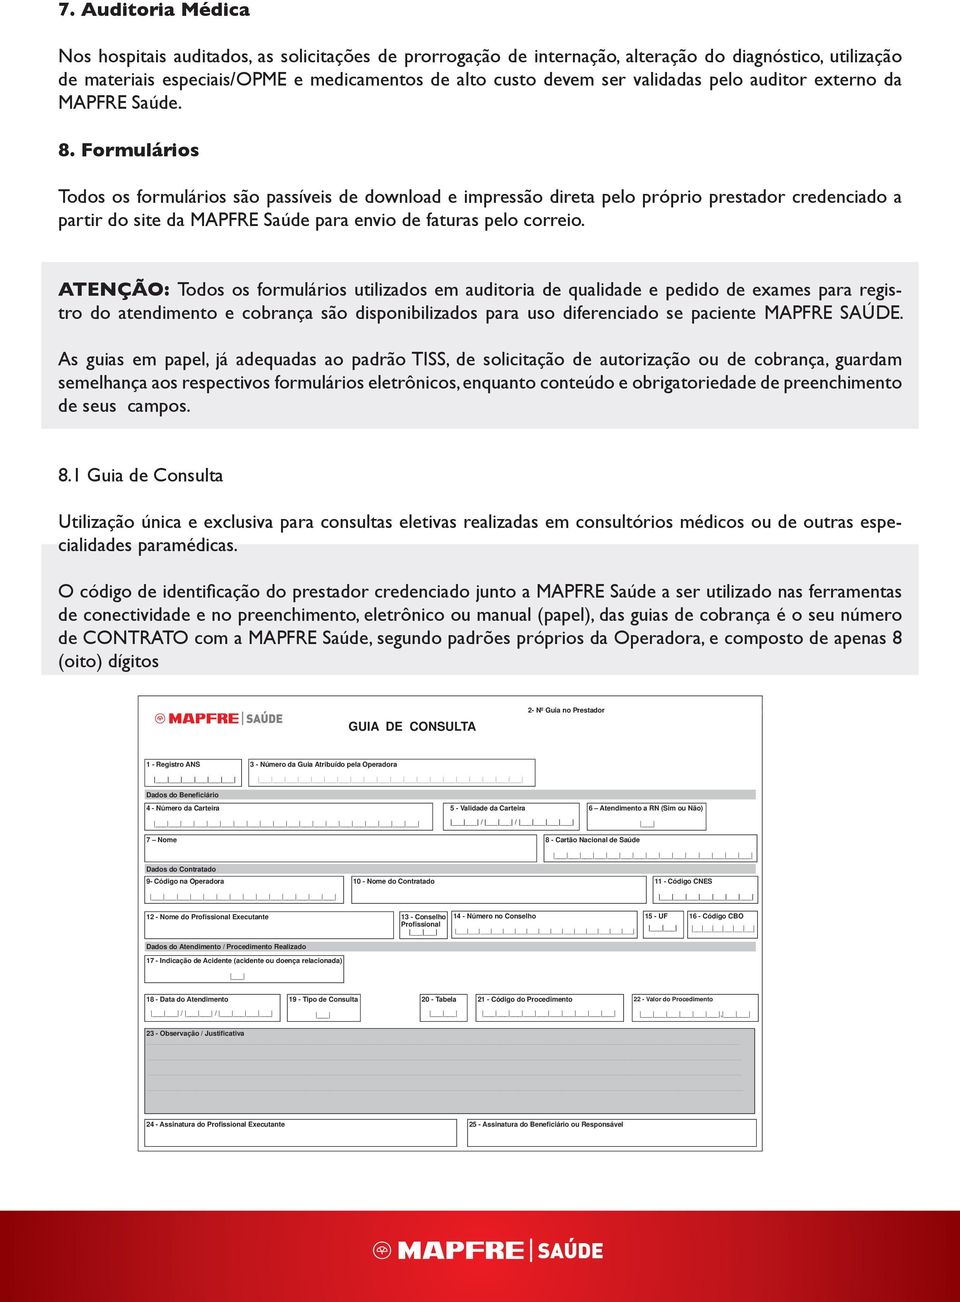 Formulários Todos os formulários são passíveis de download e impressão direta pelo próprio prestador credenciado a partir do site da MAPFRE Saúde para envio de faturas pelo correio.